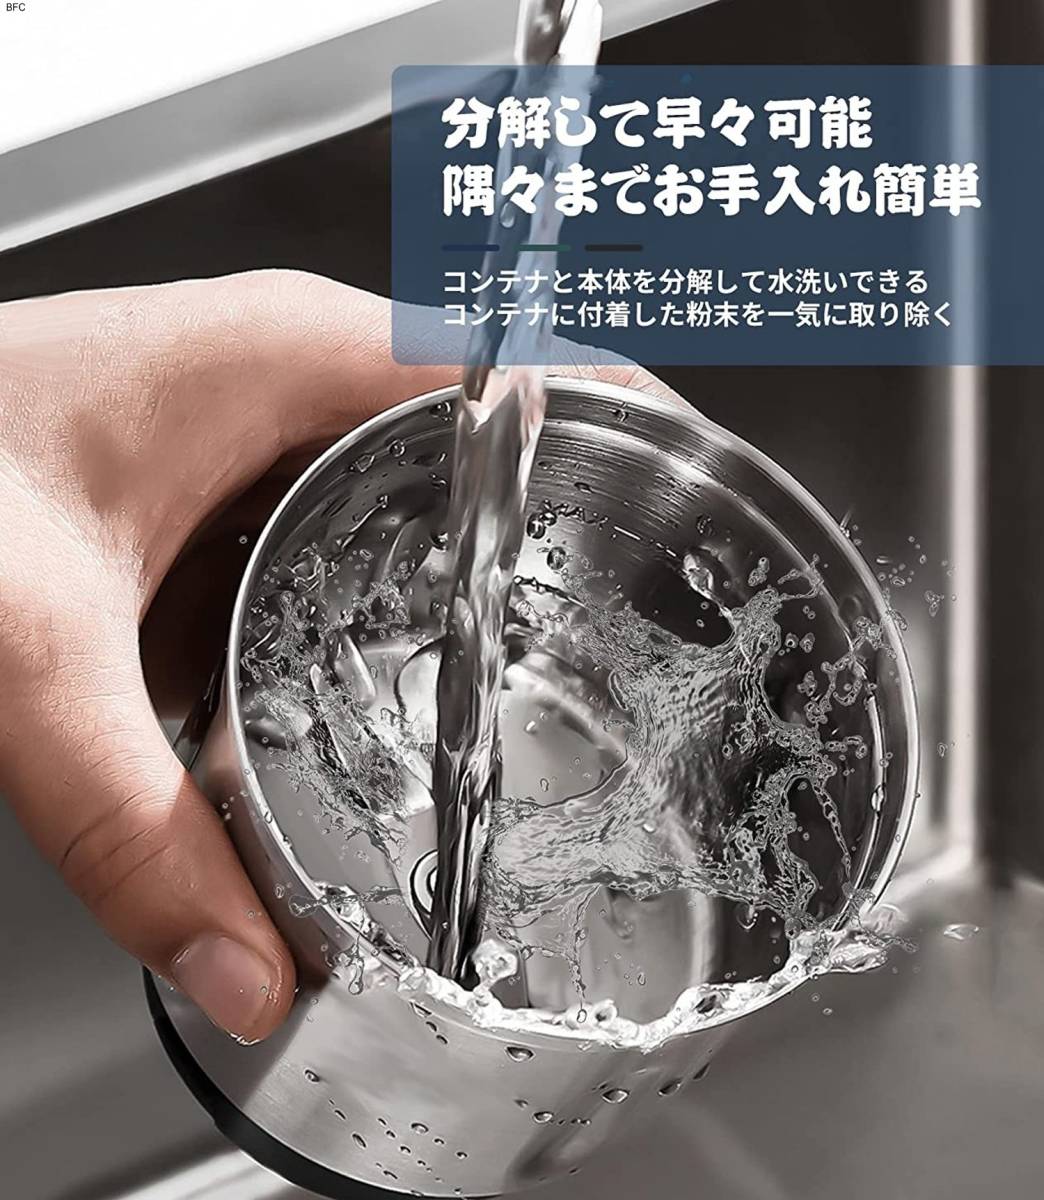 コーヒーミル 電動カッター 電動コーヒーミル 水洗い可能 お手入れ簡単 ネイビー